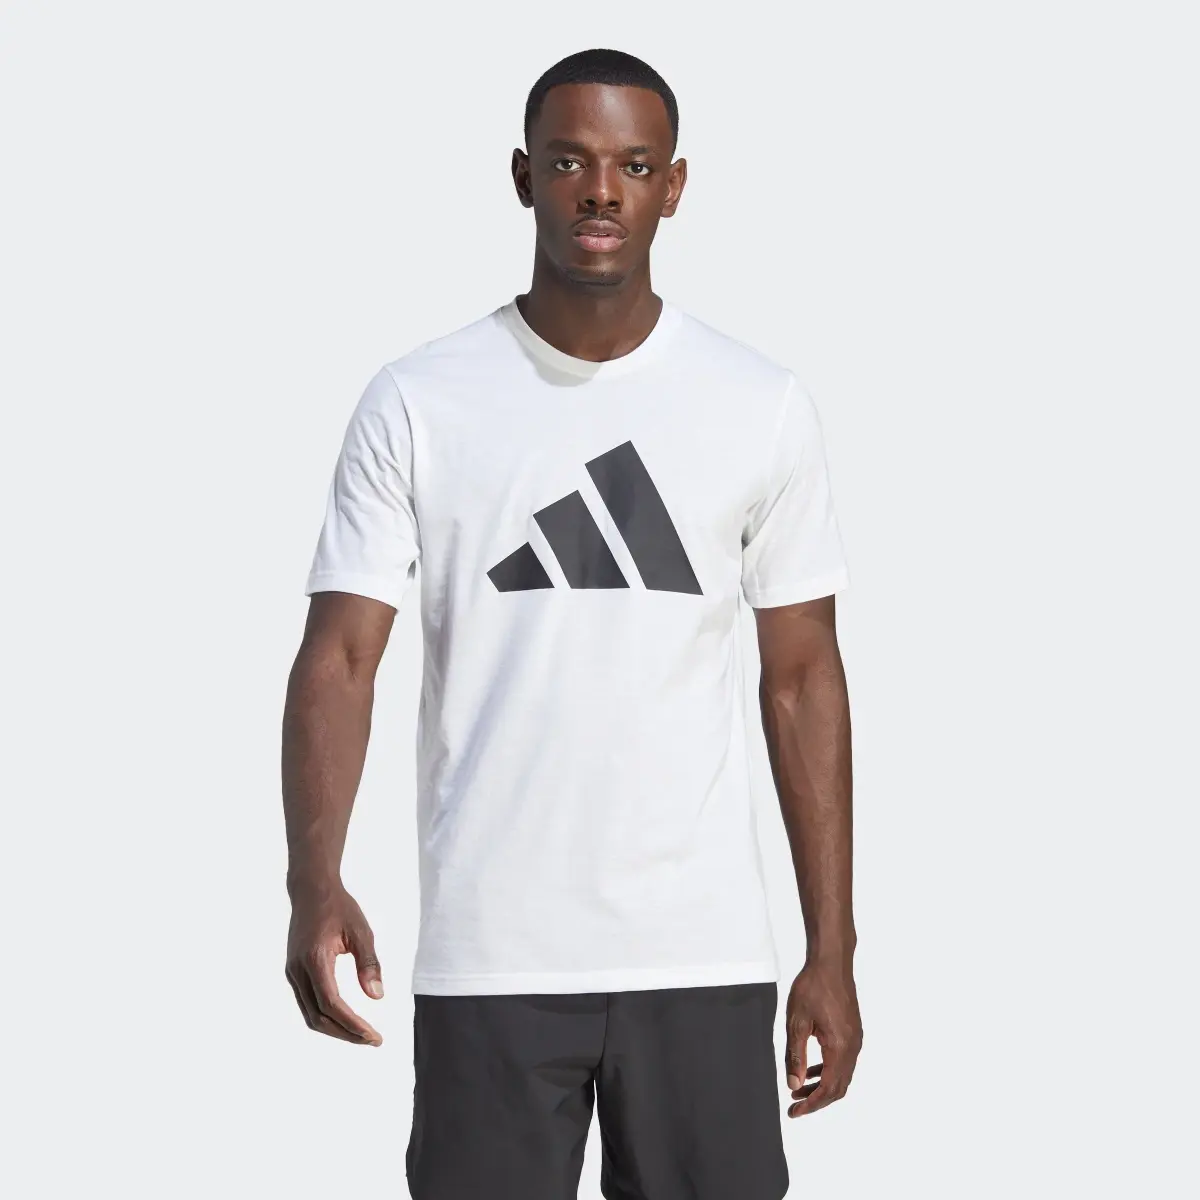 Adidas T-shirt Feelready Training Essentials. 2